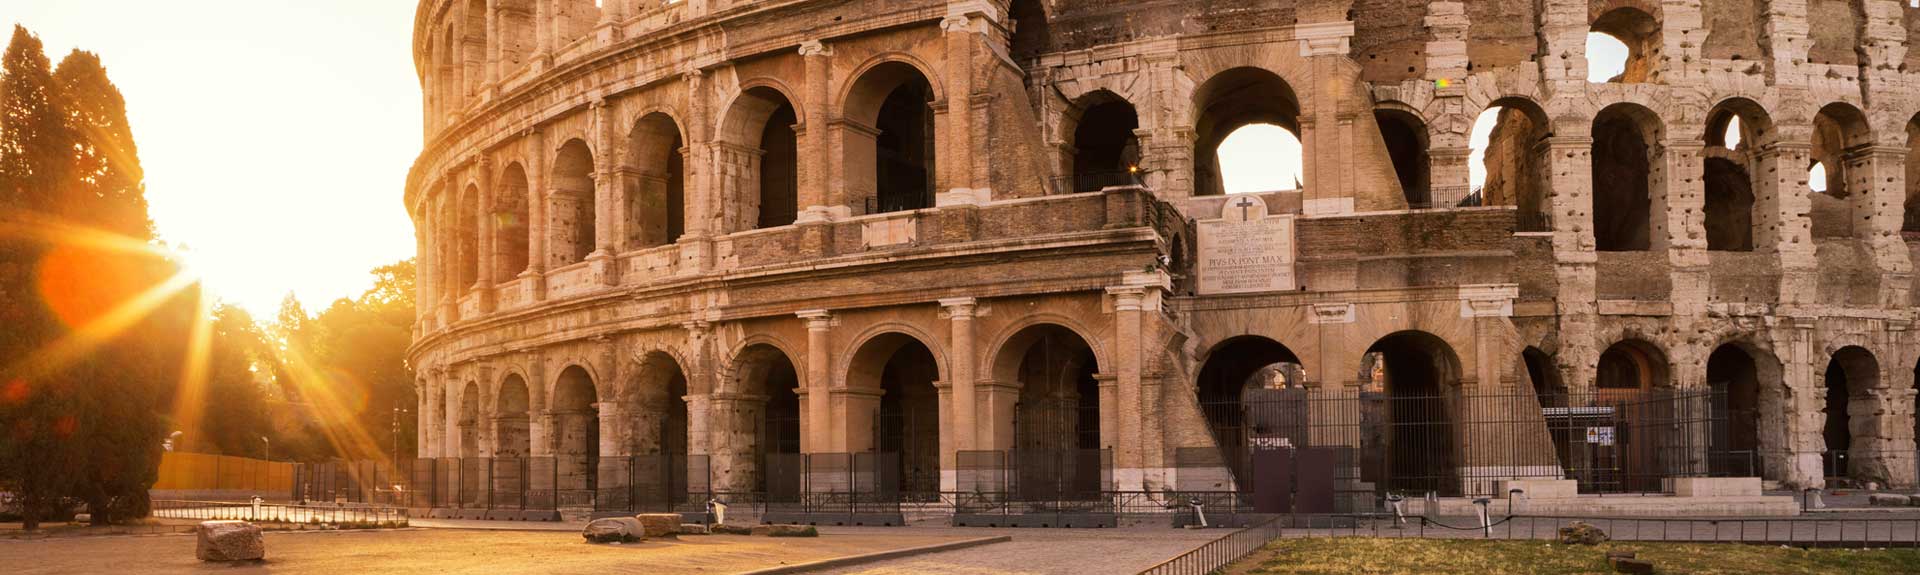 Nachhilfeunterricht Latain - Kolosseum in Rom